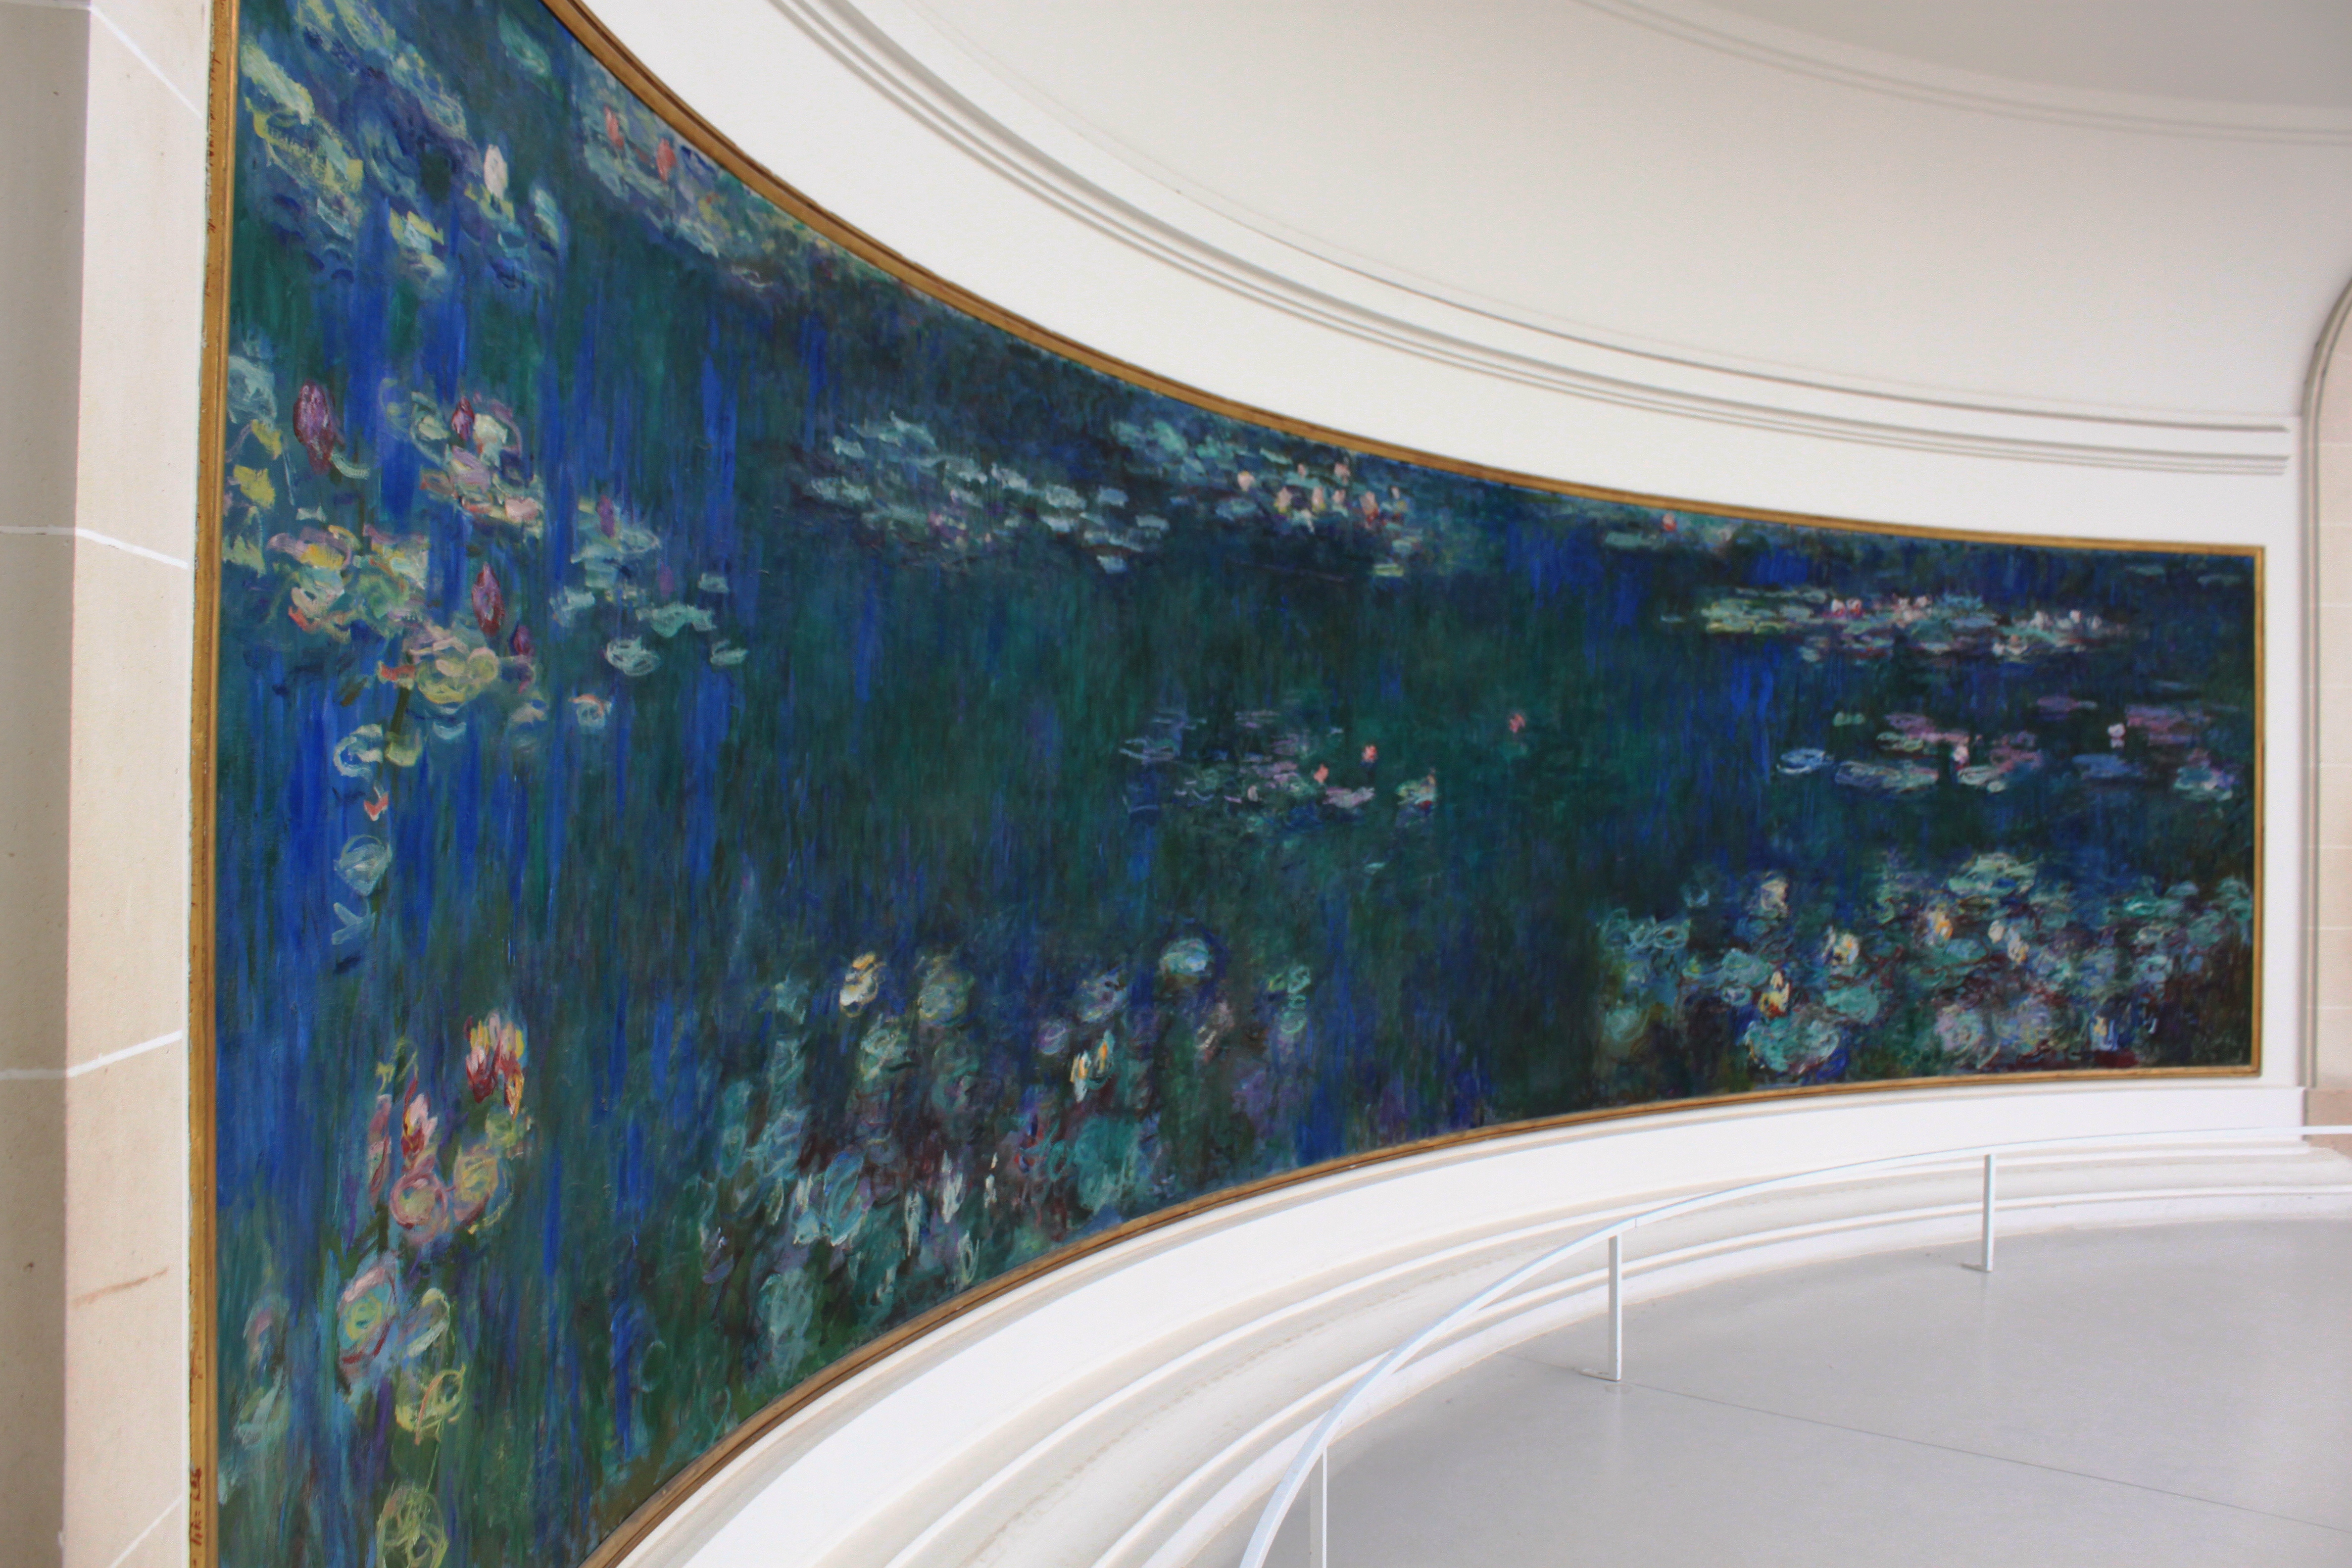 Monet water lilies